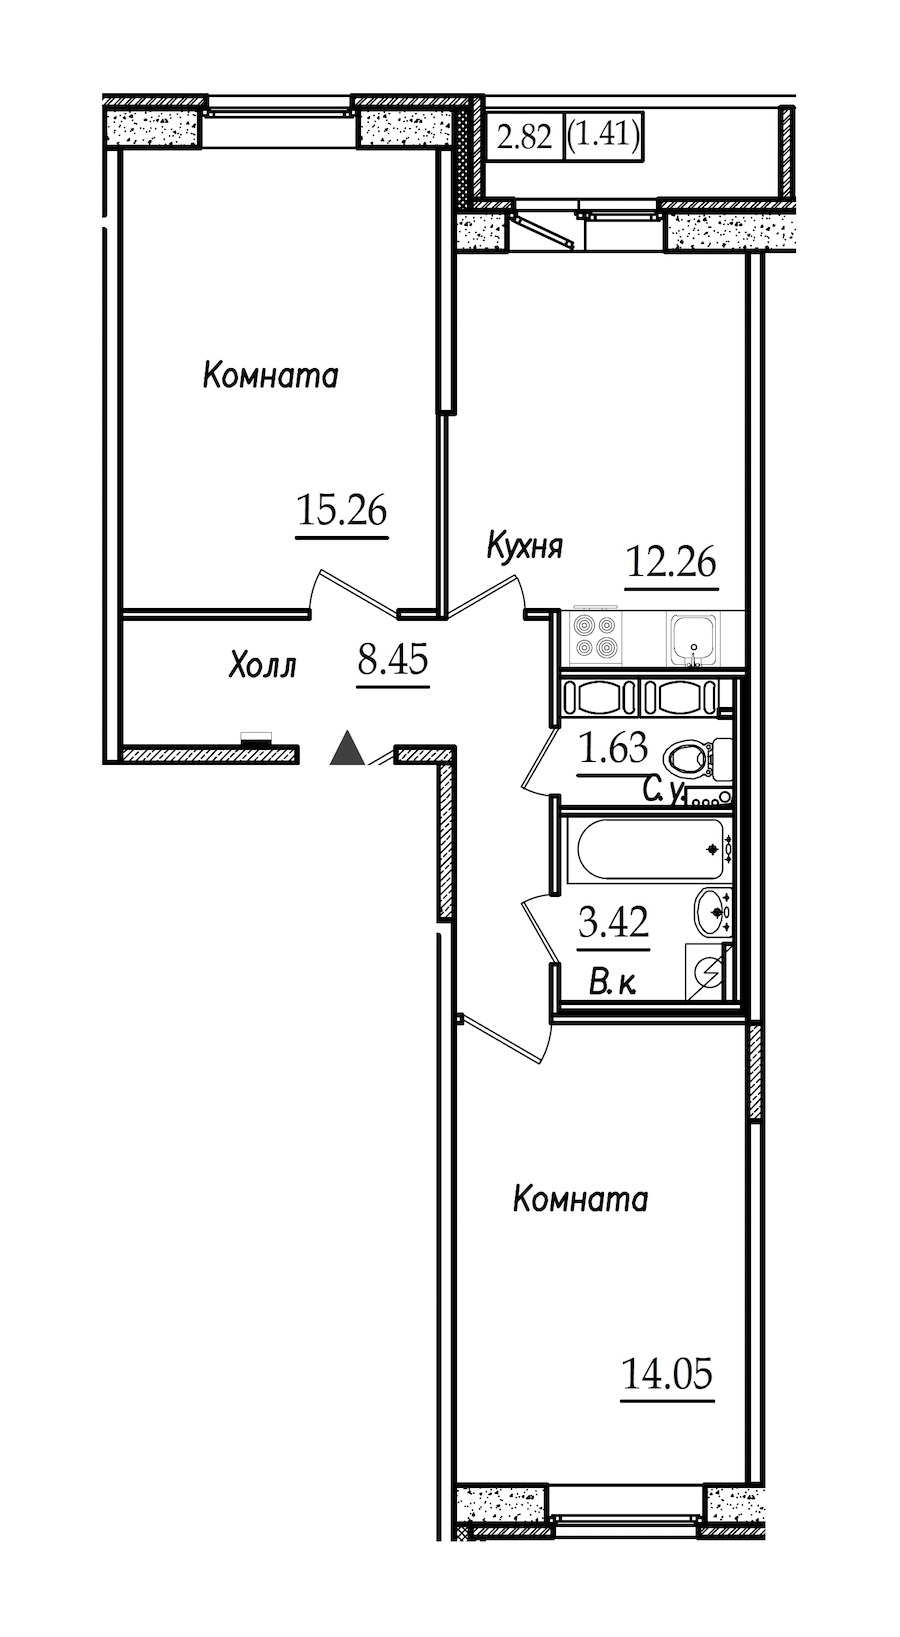 Двухкомнатная квартира в СПб Реновация: площадь 56.48 м2 , этаж: 2 – купить в Санкт-Петербурге